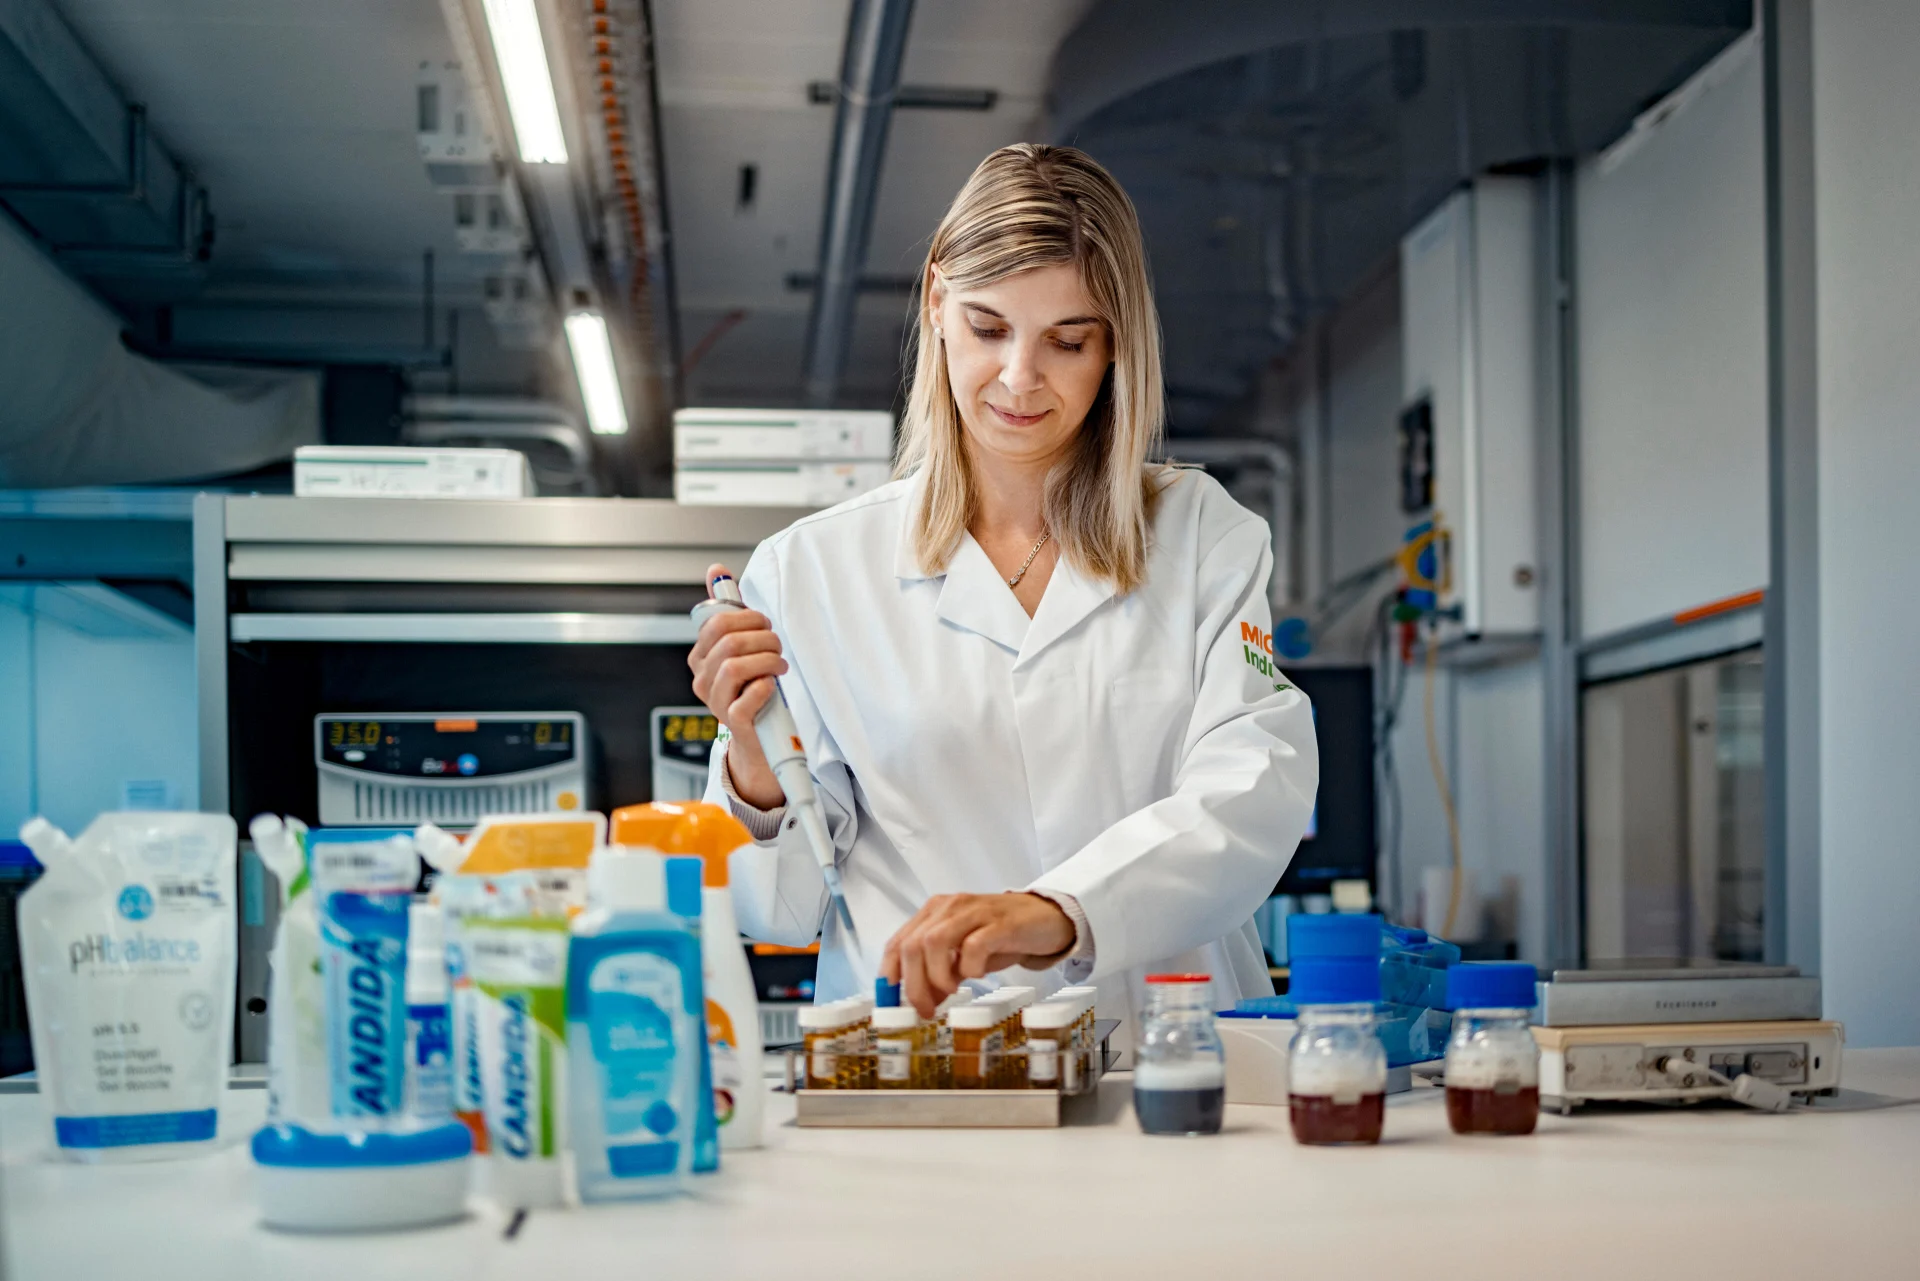 Una donna in camice bianco lavora in piedi in un laboratorio, con vari prodotti Migros davanti a sé.